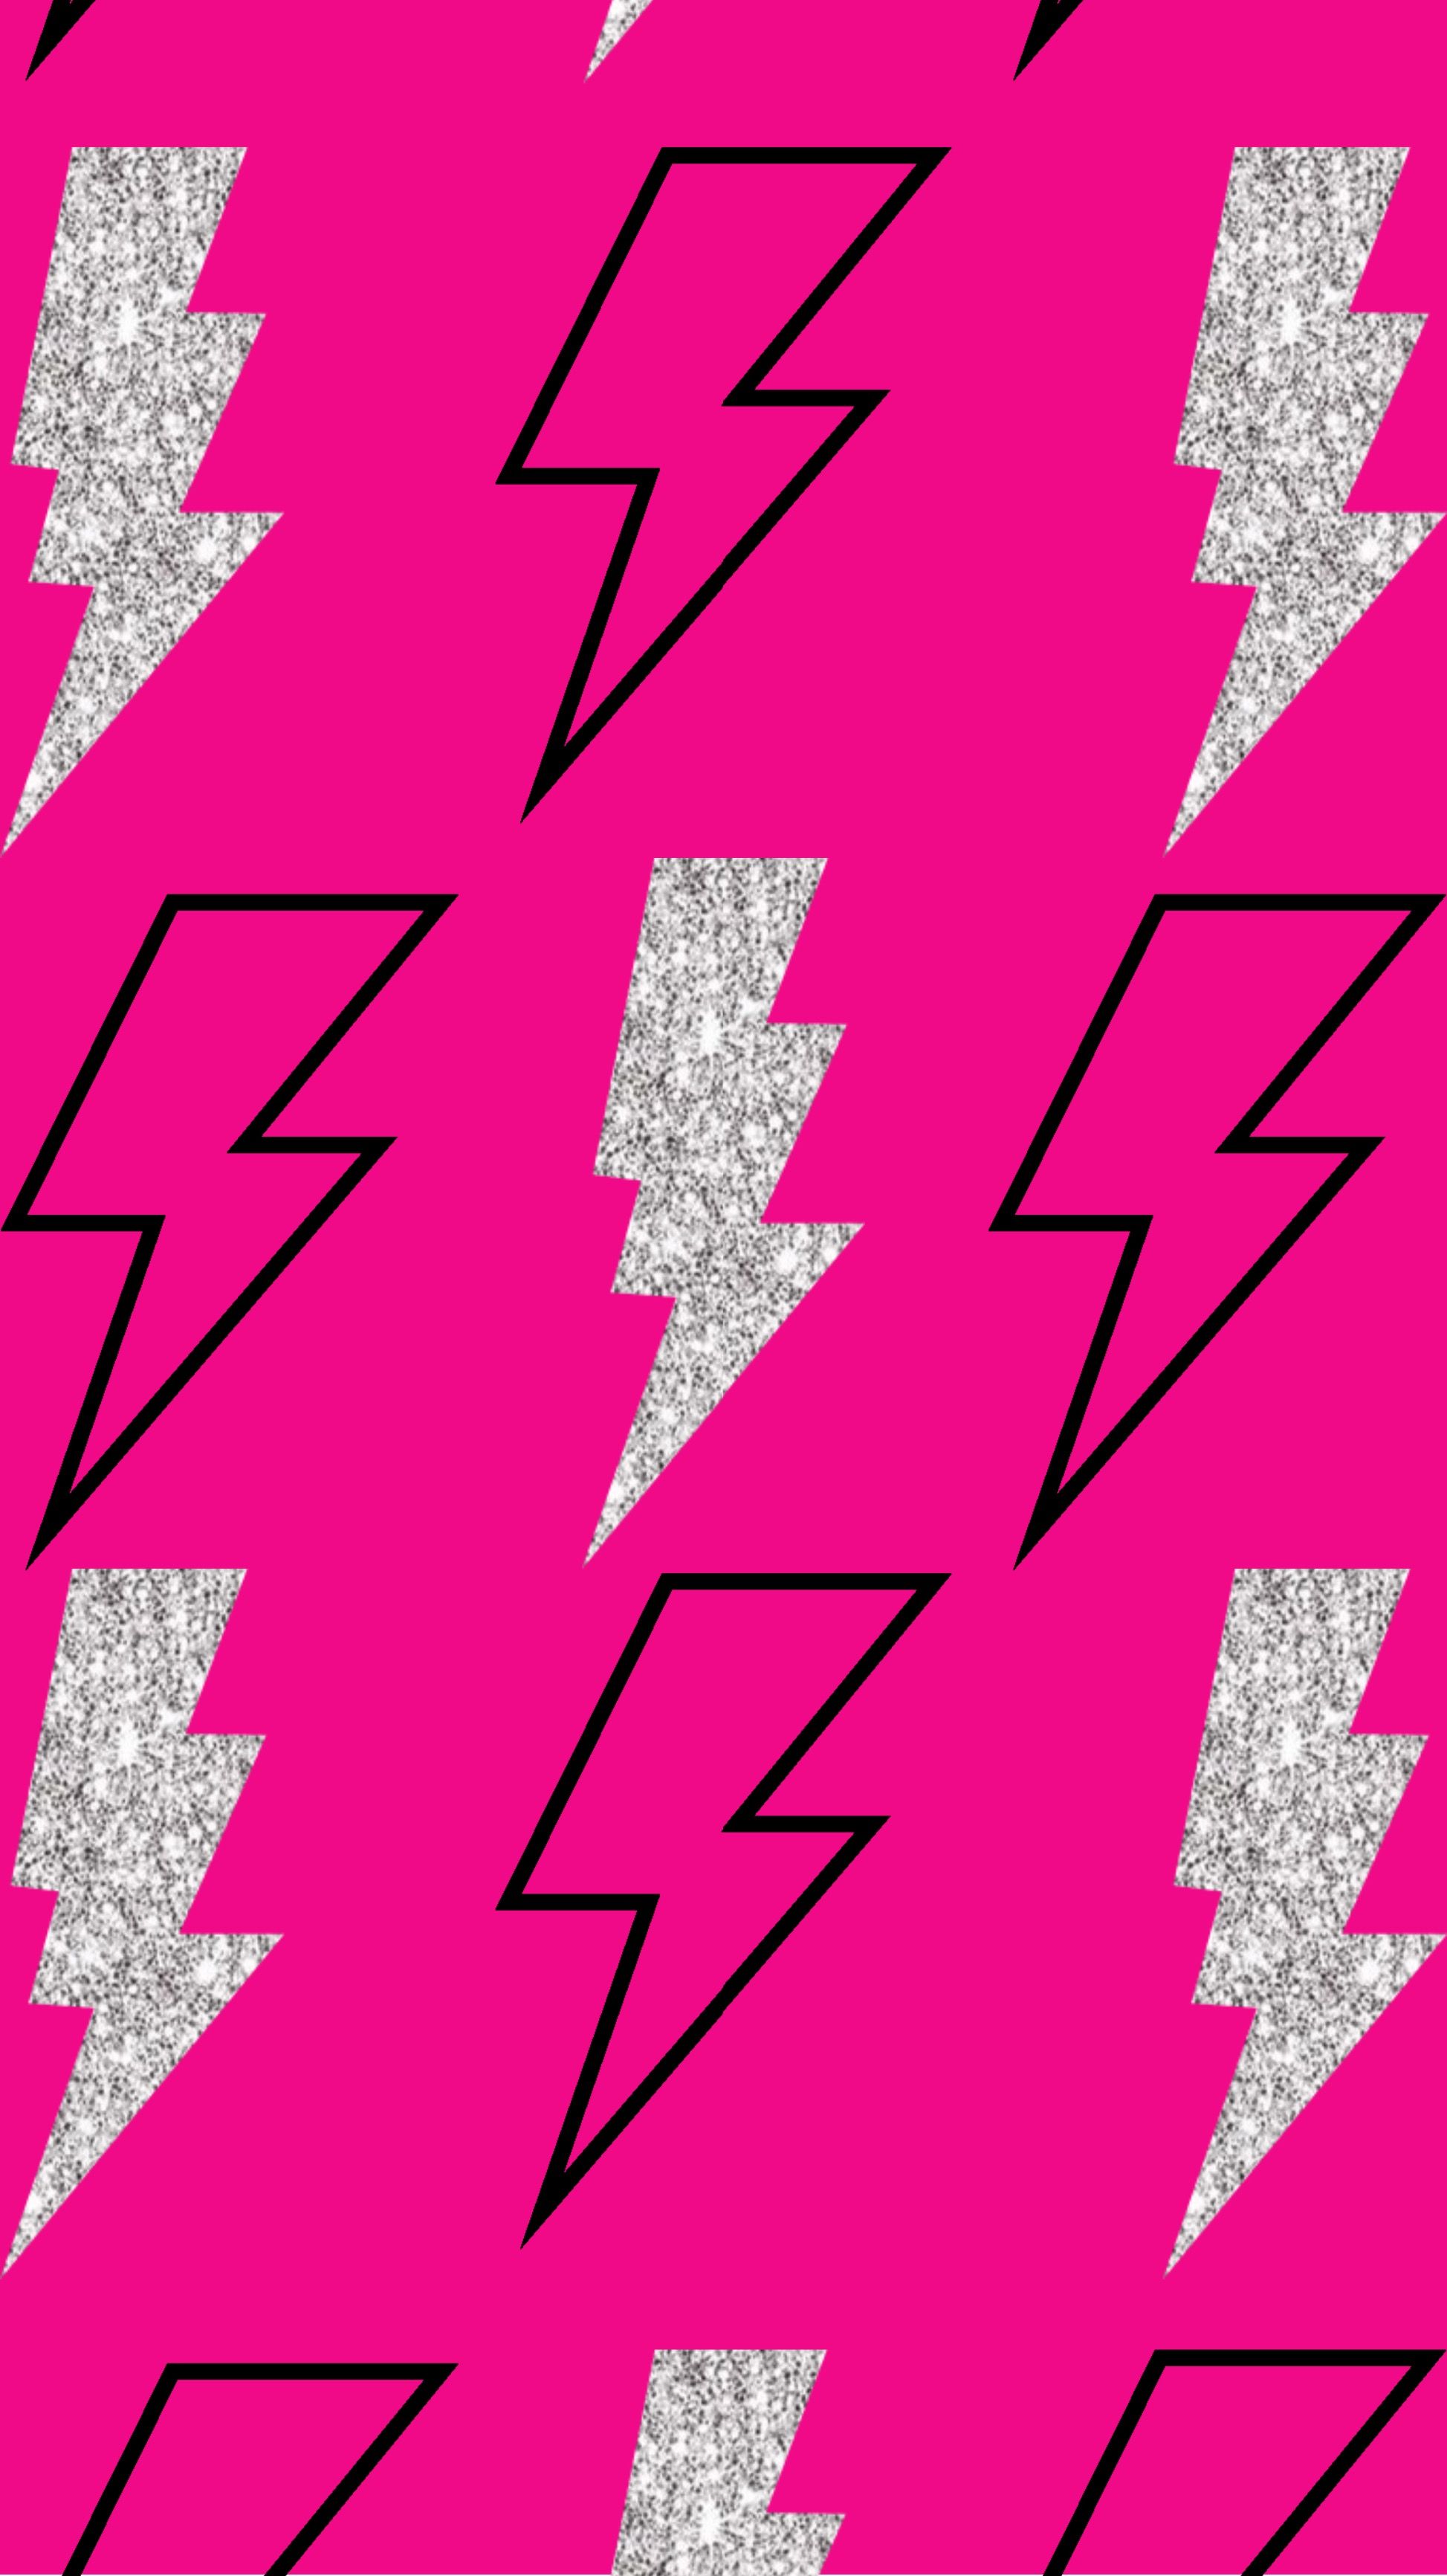 lightning bolt wallpaper. Lighting bolts background, Sassy wallpaper, Hot pink lightning bolt wallpaper